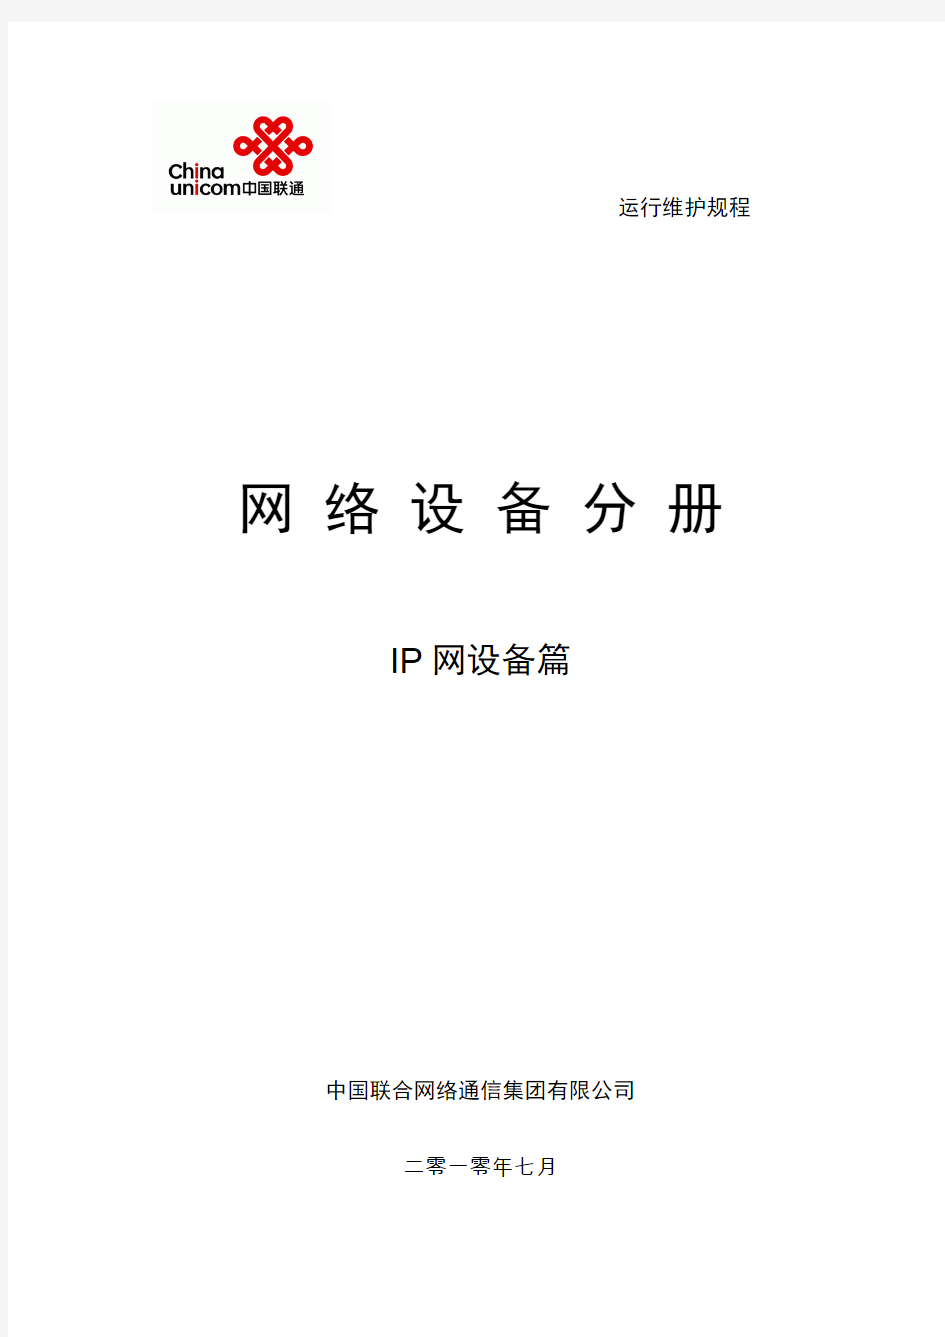 中国联通通信网络运行维护规程--固定网络设备分册-IP网设备篇